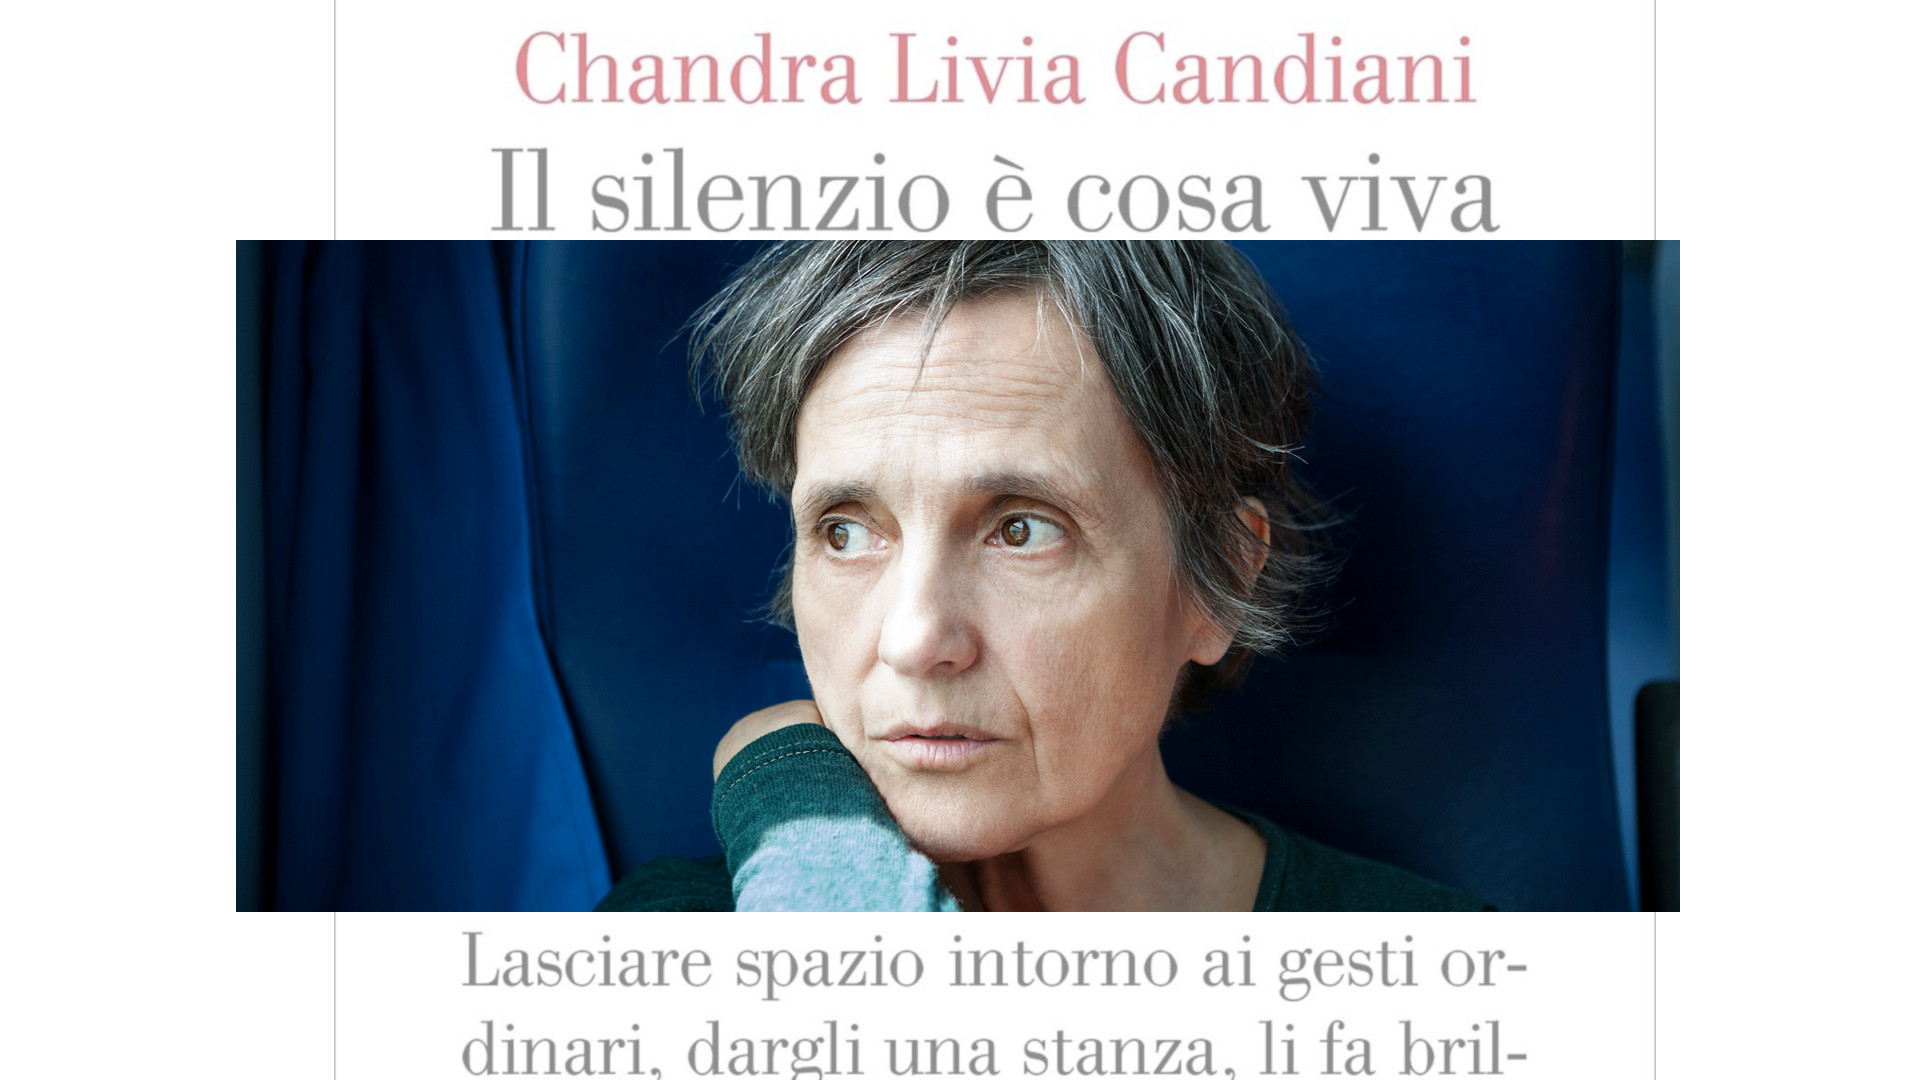 Il silenzio è cosa viva by Chandra Livia Candiani, Einaudi